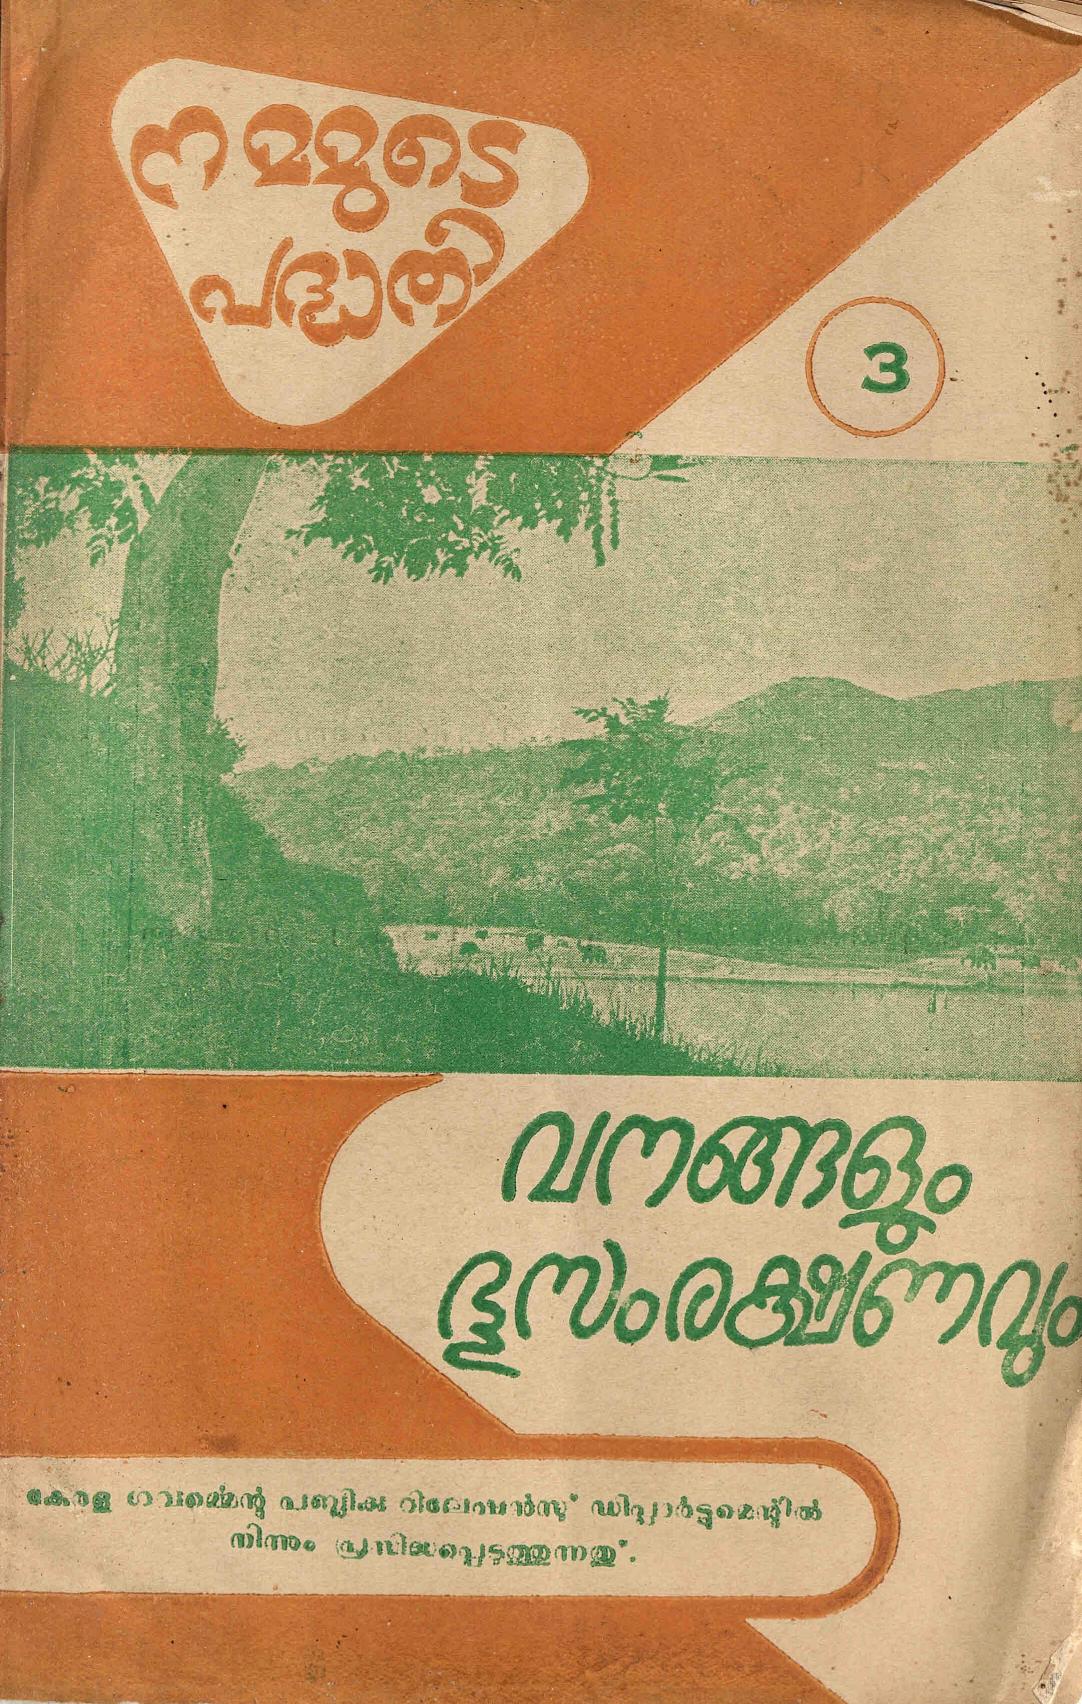 1957 - നമ്മുടെ പദ്ധതി - വനങ്ങളും ഭൂസംരക്ഷണവും